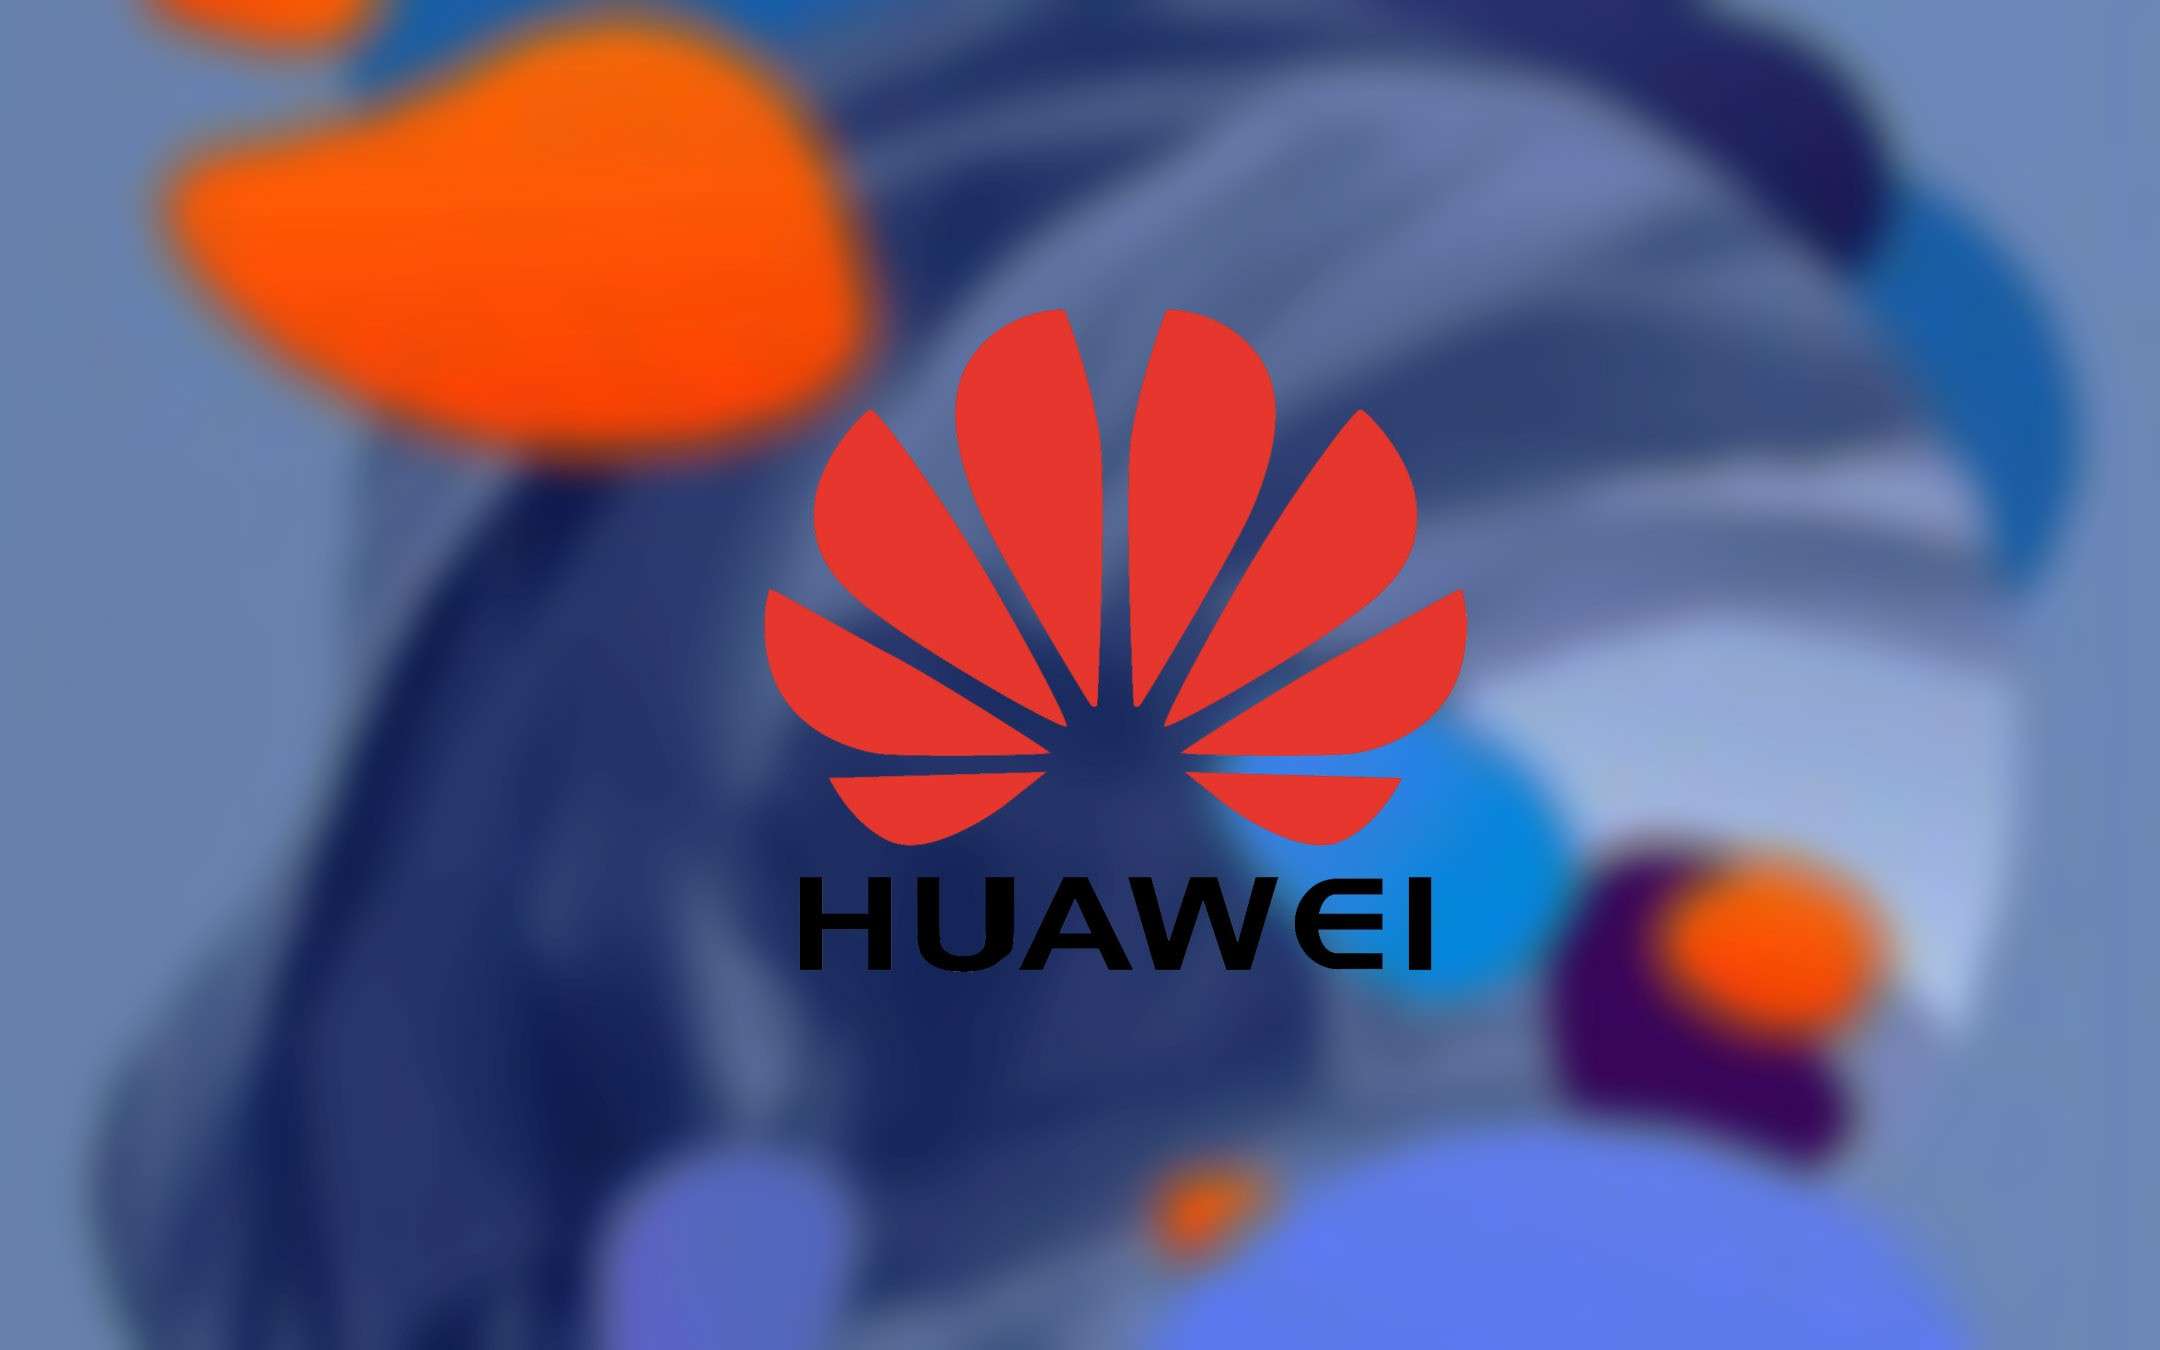 Huawei P20 Lite 2019 avrà quattro fotocamere